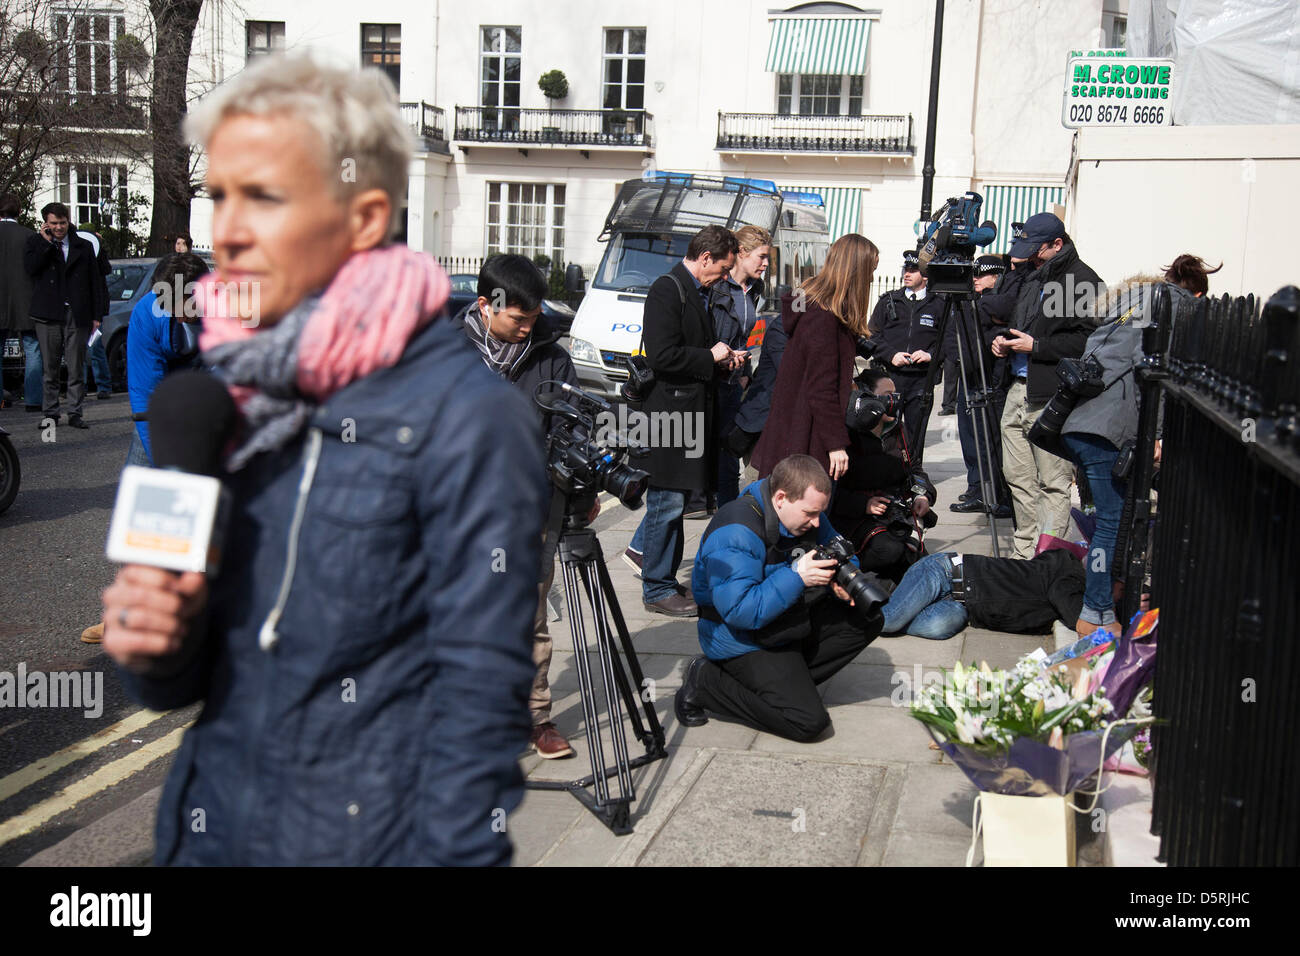 Medien sammeln an die Londoner Residenz auf Chester Square der Baronin Margaret Thatcher nach der Bekanntgabe des Todes. Maggie Thatcher (87), auch bekannt als die "Eiserne Lady" britische Politik dominiert seit 20 Jahren. Stockfoto